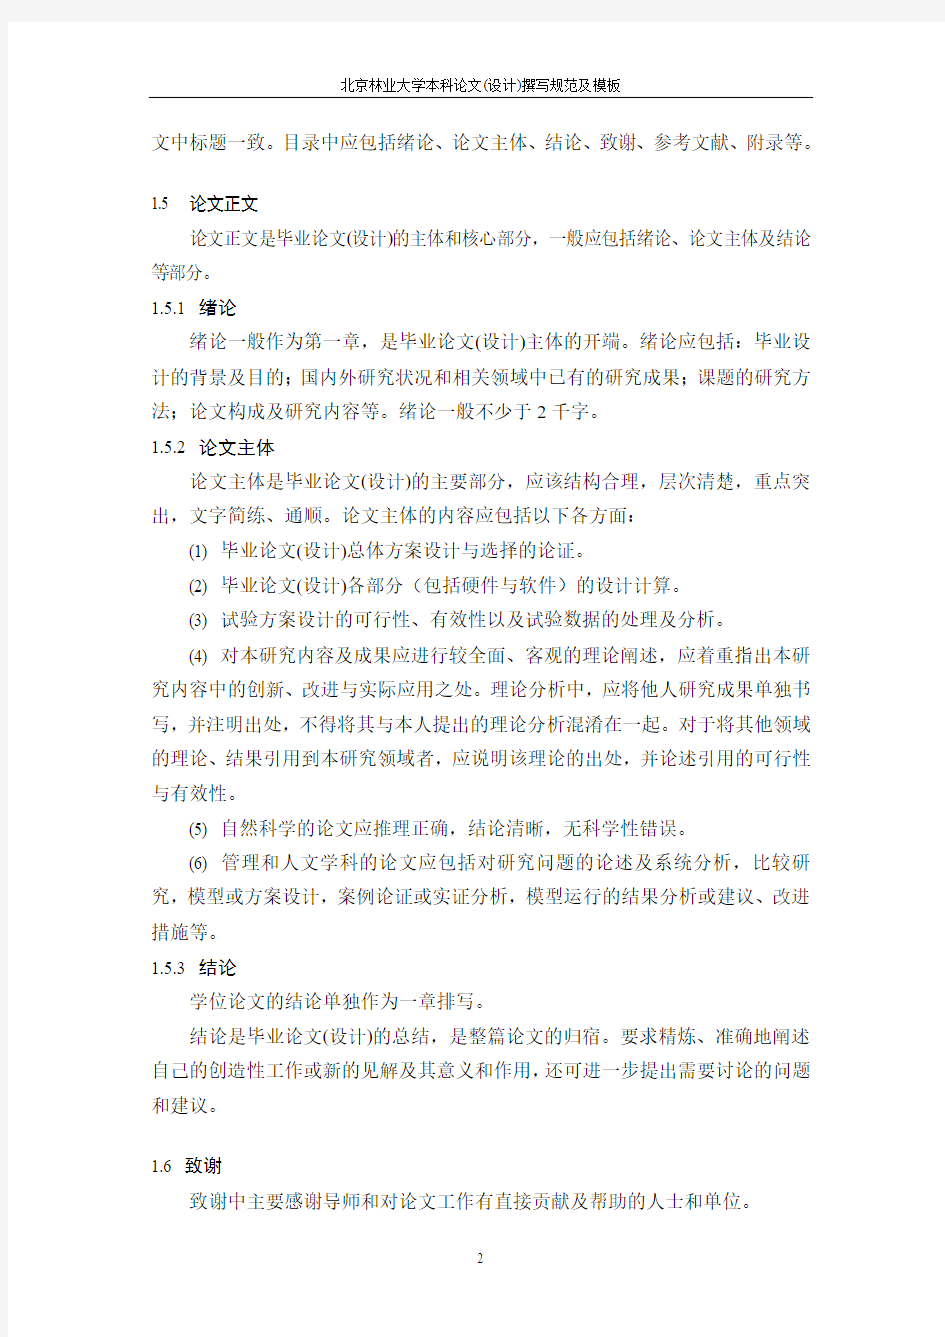 北京林业大学论文撰写规范及模版